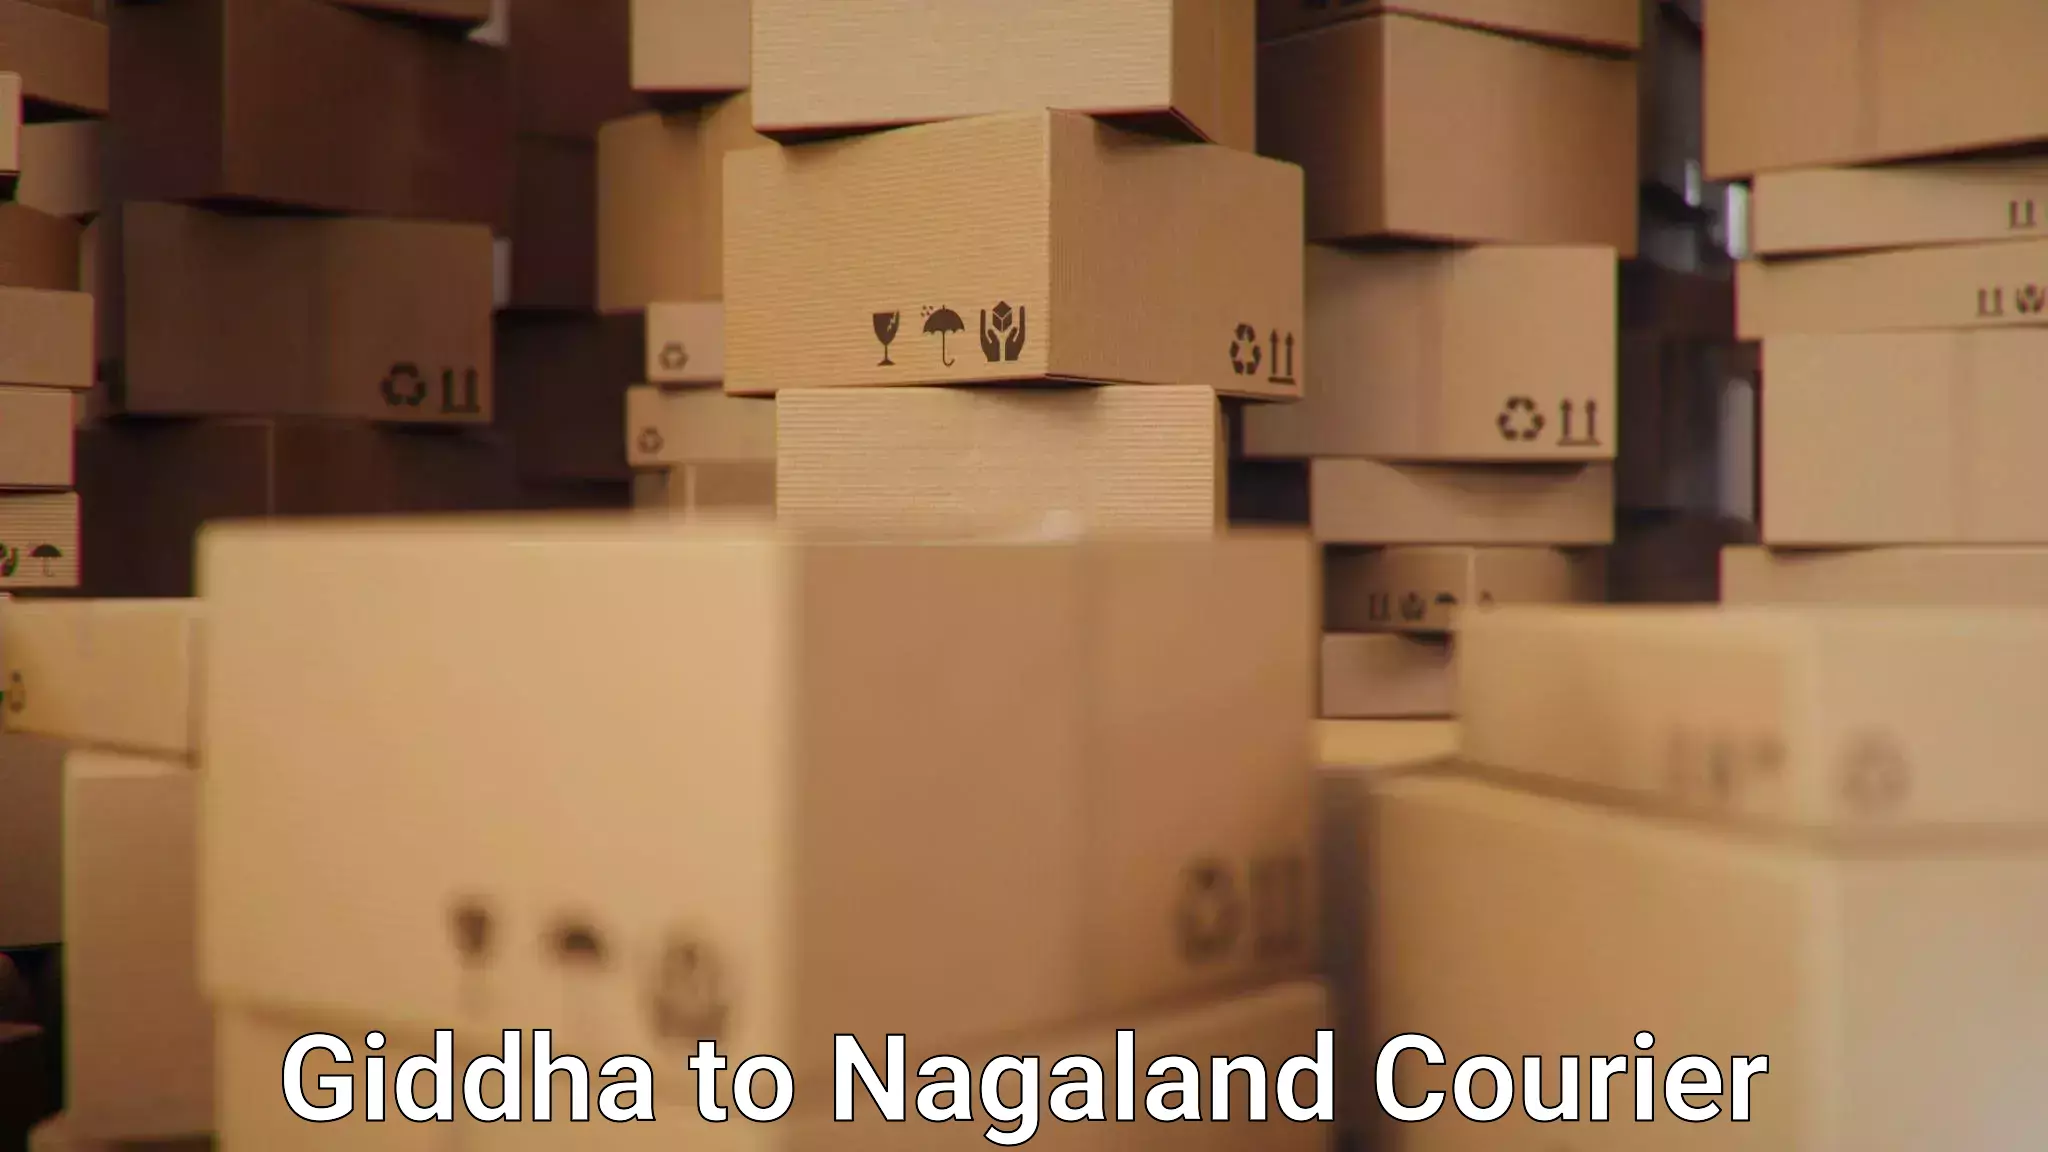 24/7 shipping services Giddha to NIT Nagaland